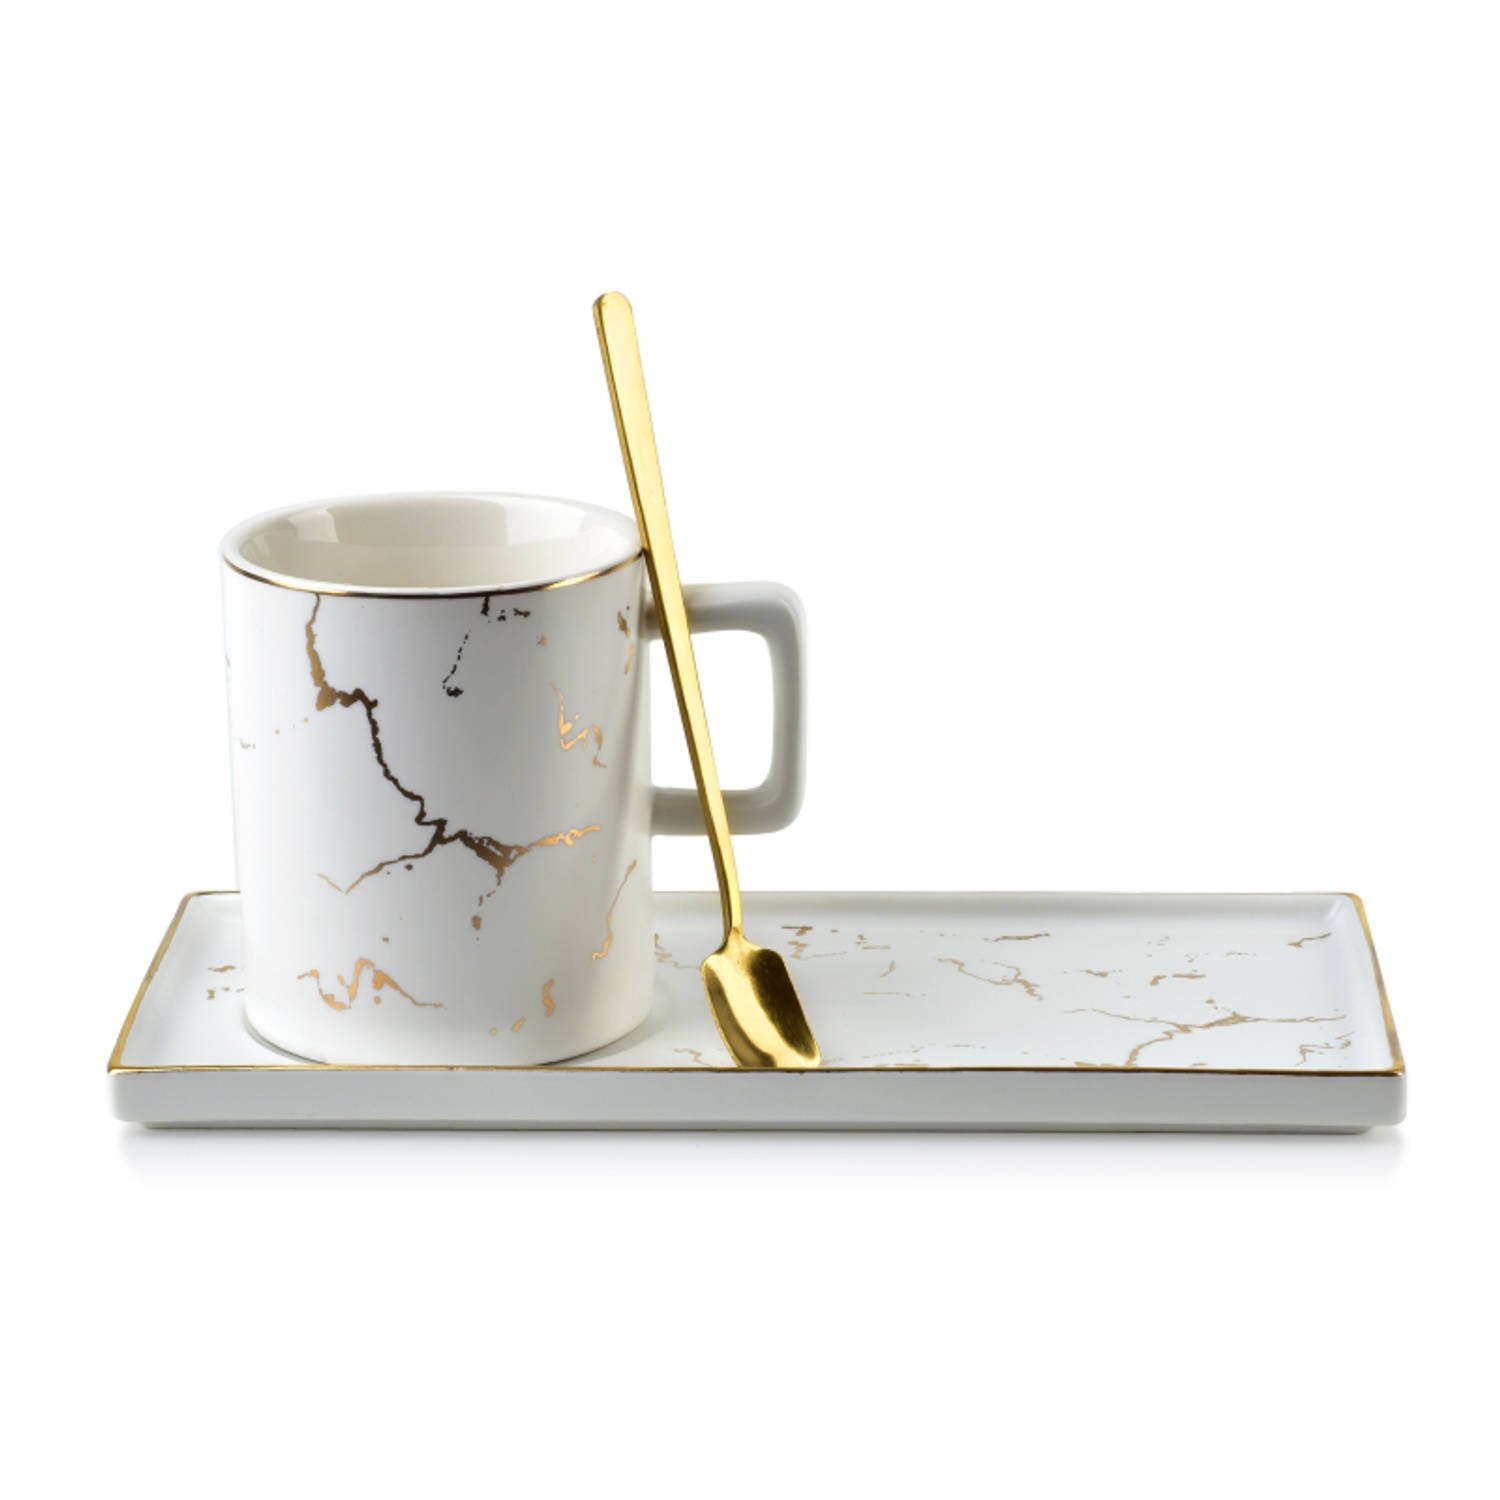 Affekdesign Odette porseleinen mok en schotel met marmer look en lepel 250ml wit - inclusief uniek gouden lepel en bijpassende schotel - koffiemok - theemok - exclusieve en elegant